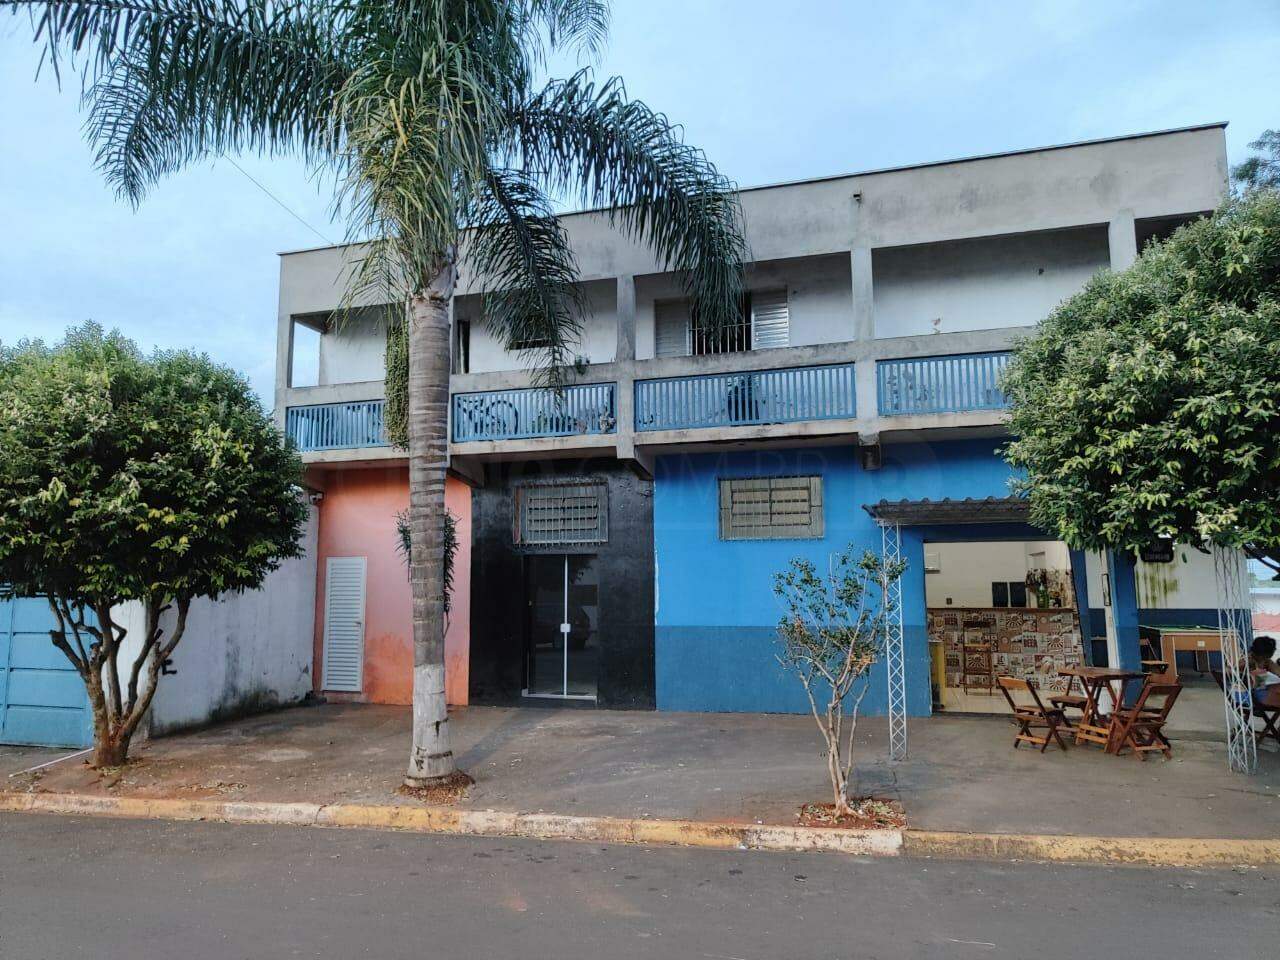 Casa à venda, 4 quartos, sendo 1 suíte, 2 vagas, no bairro Residencial Bom Jardim em Rio das Pedras - SP